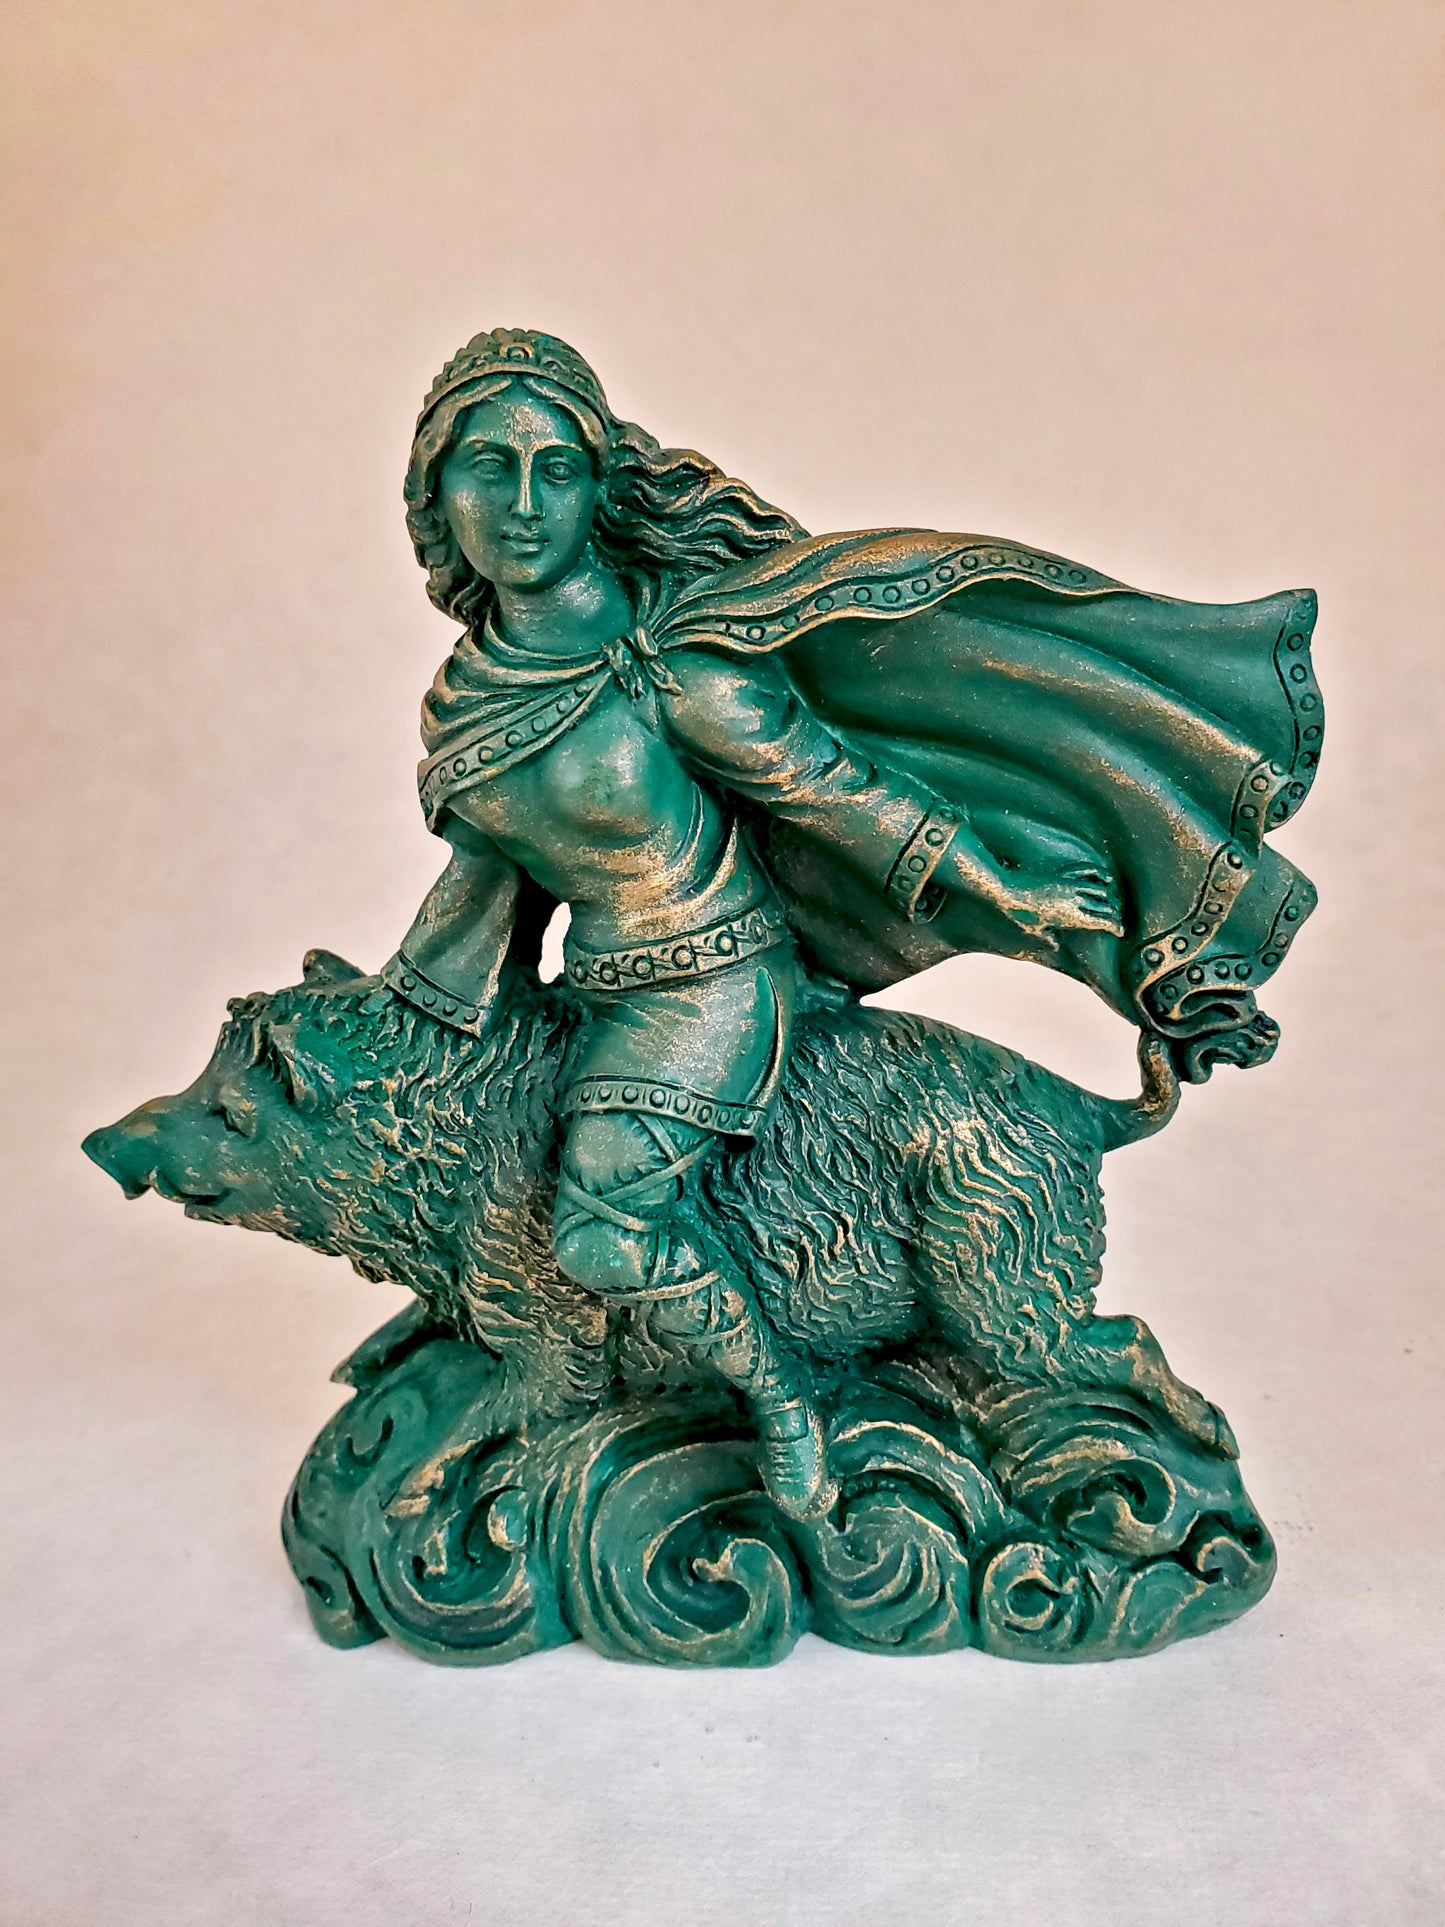 Freya Statue Norse Goddess On Boar Gypumstone Handmade Altar Idol  5.5"